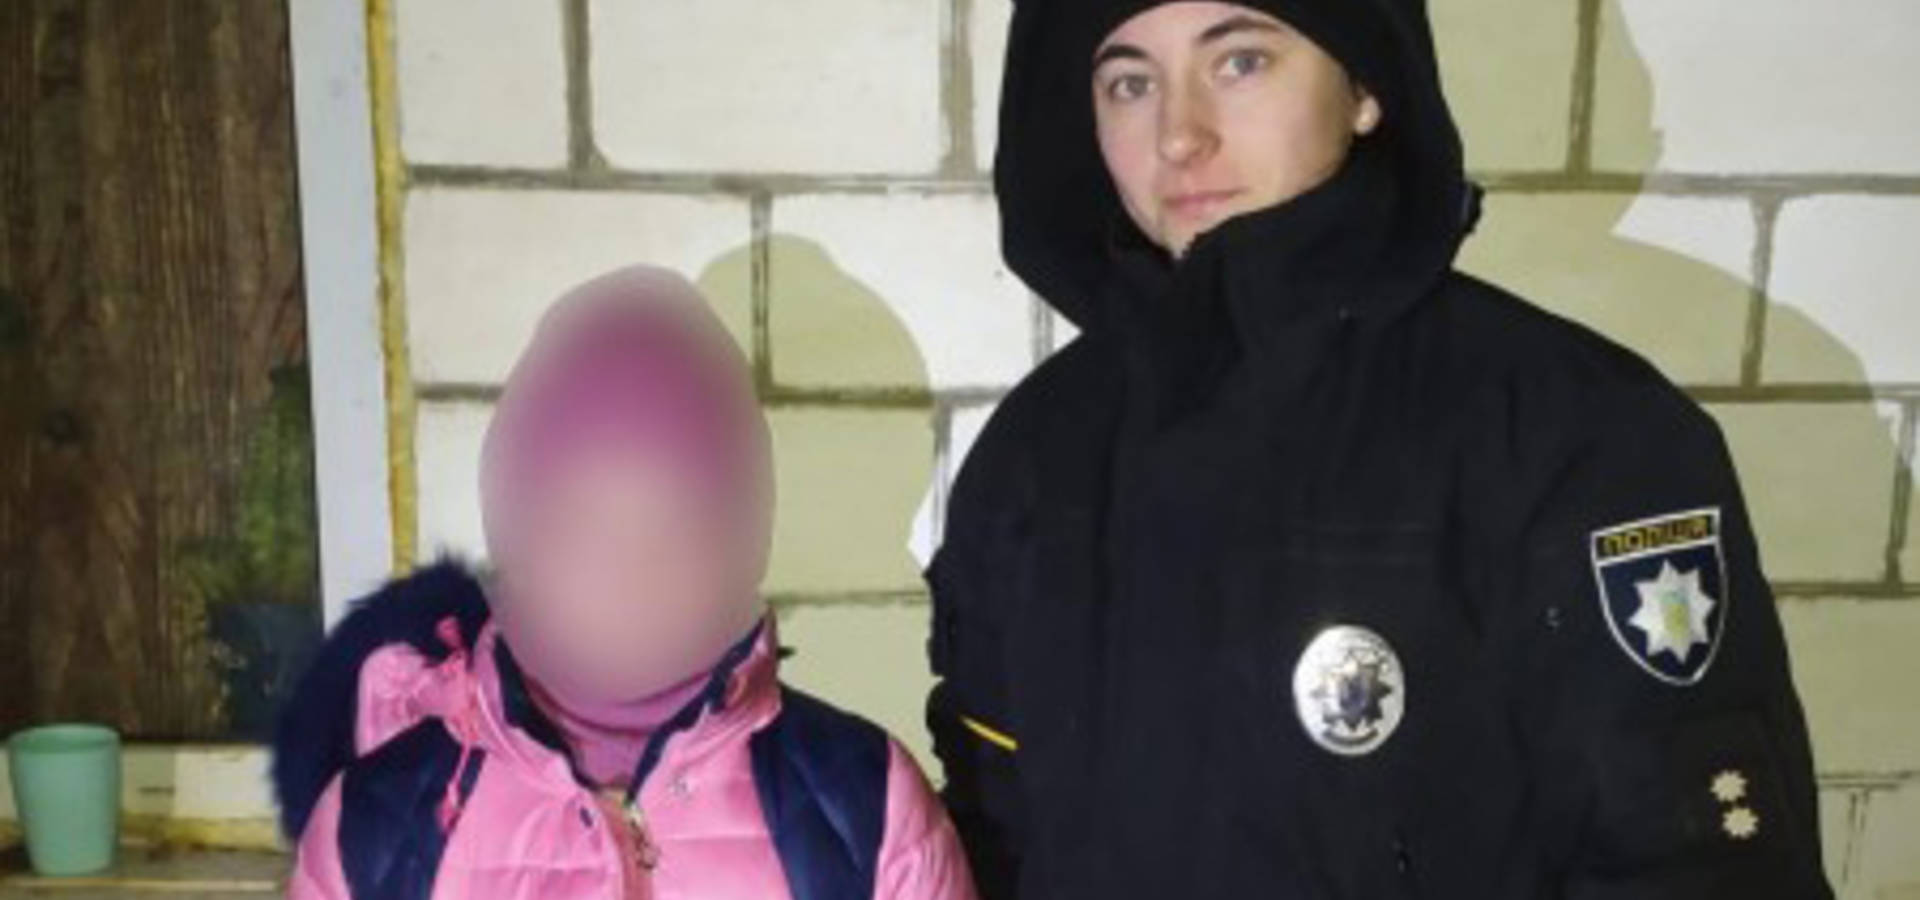 Вийшла зі школи та не повернулася додому: на Вінниччині поліцейські розшукали зниклу дівчинку